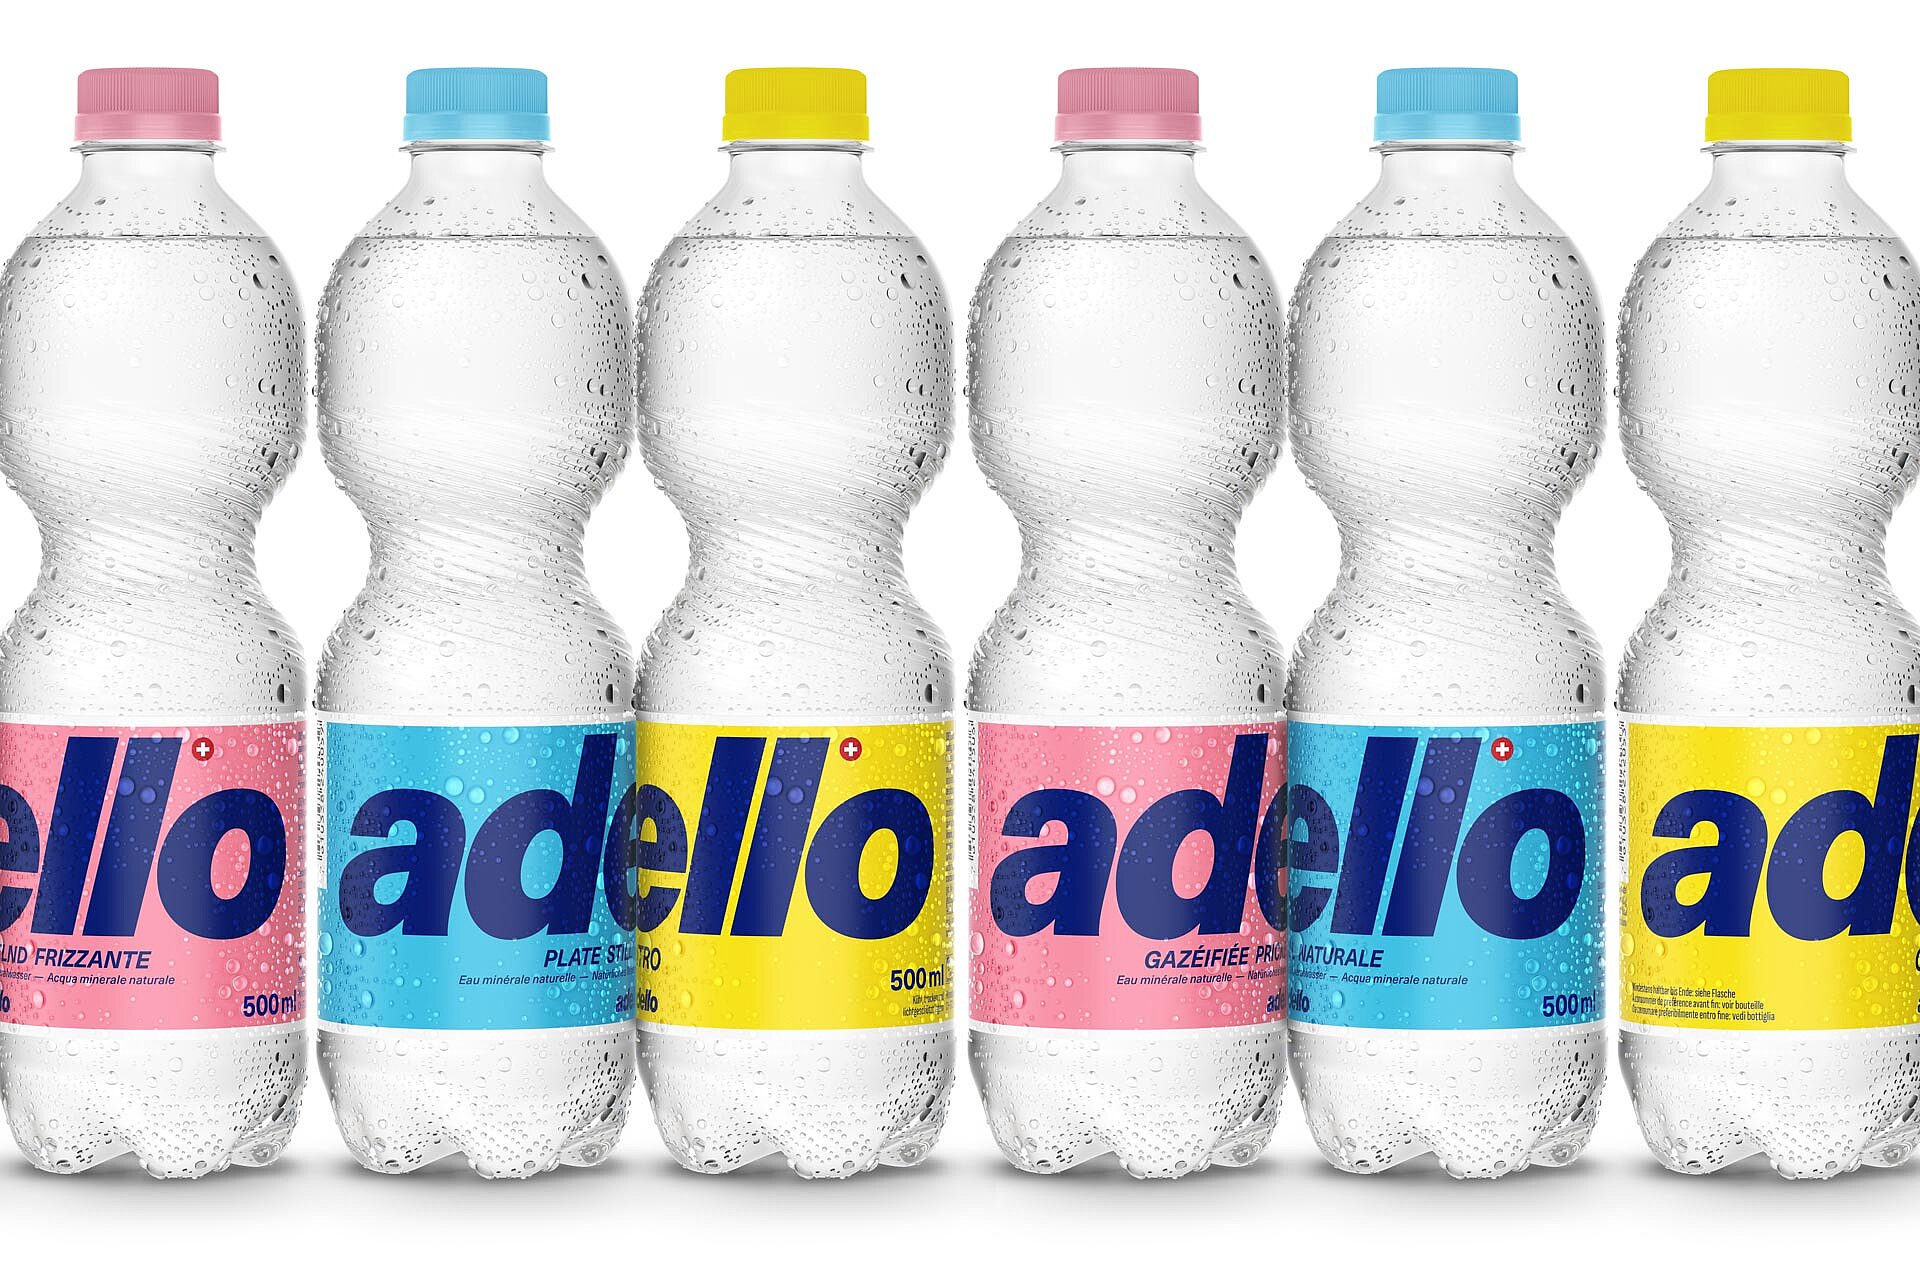 rebranding for the adello